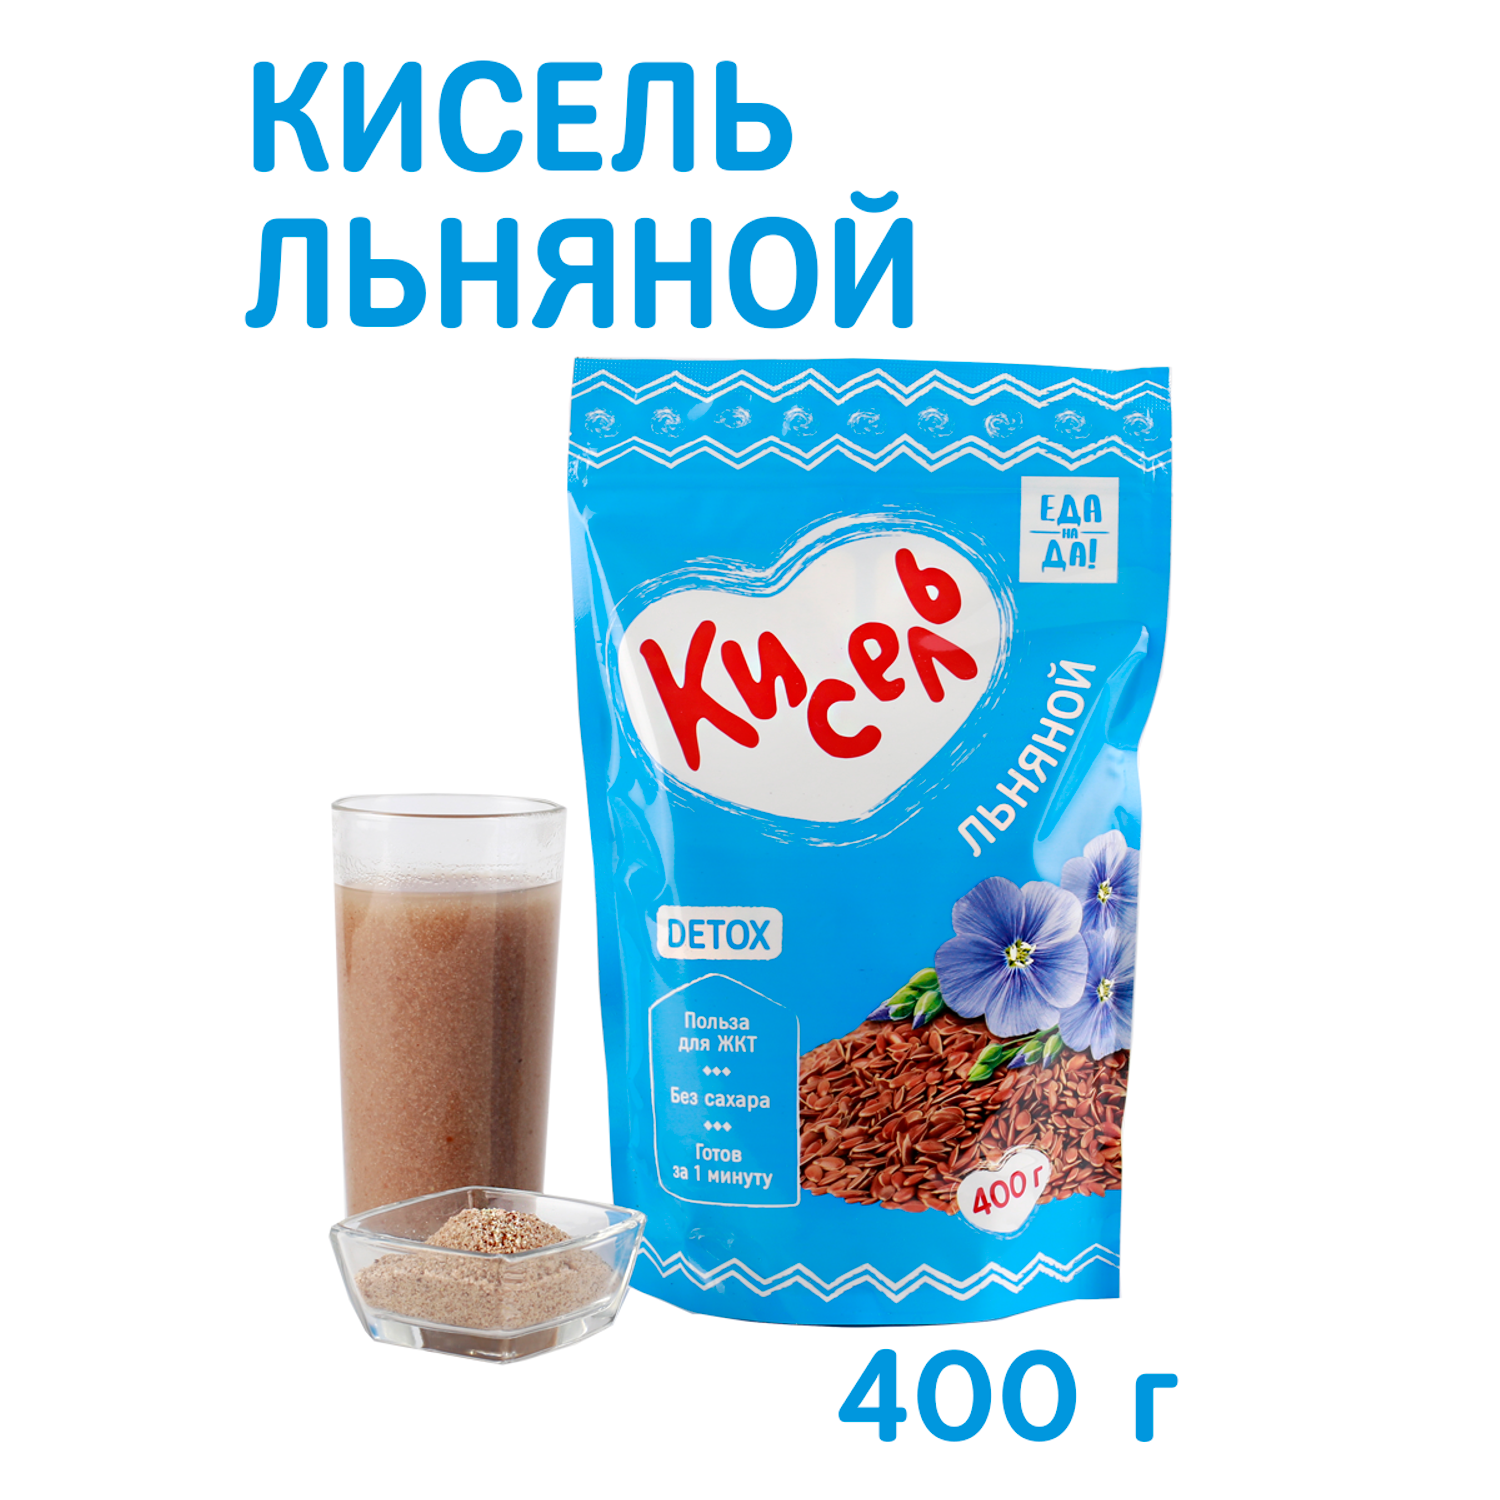 Нежный молочный кисель: рецепт любимого десерта родом из СССР